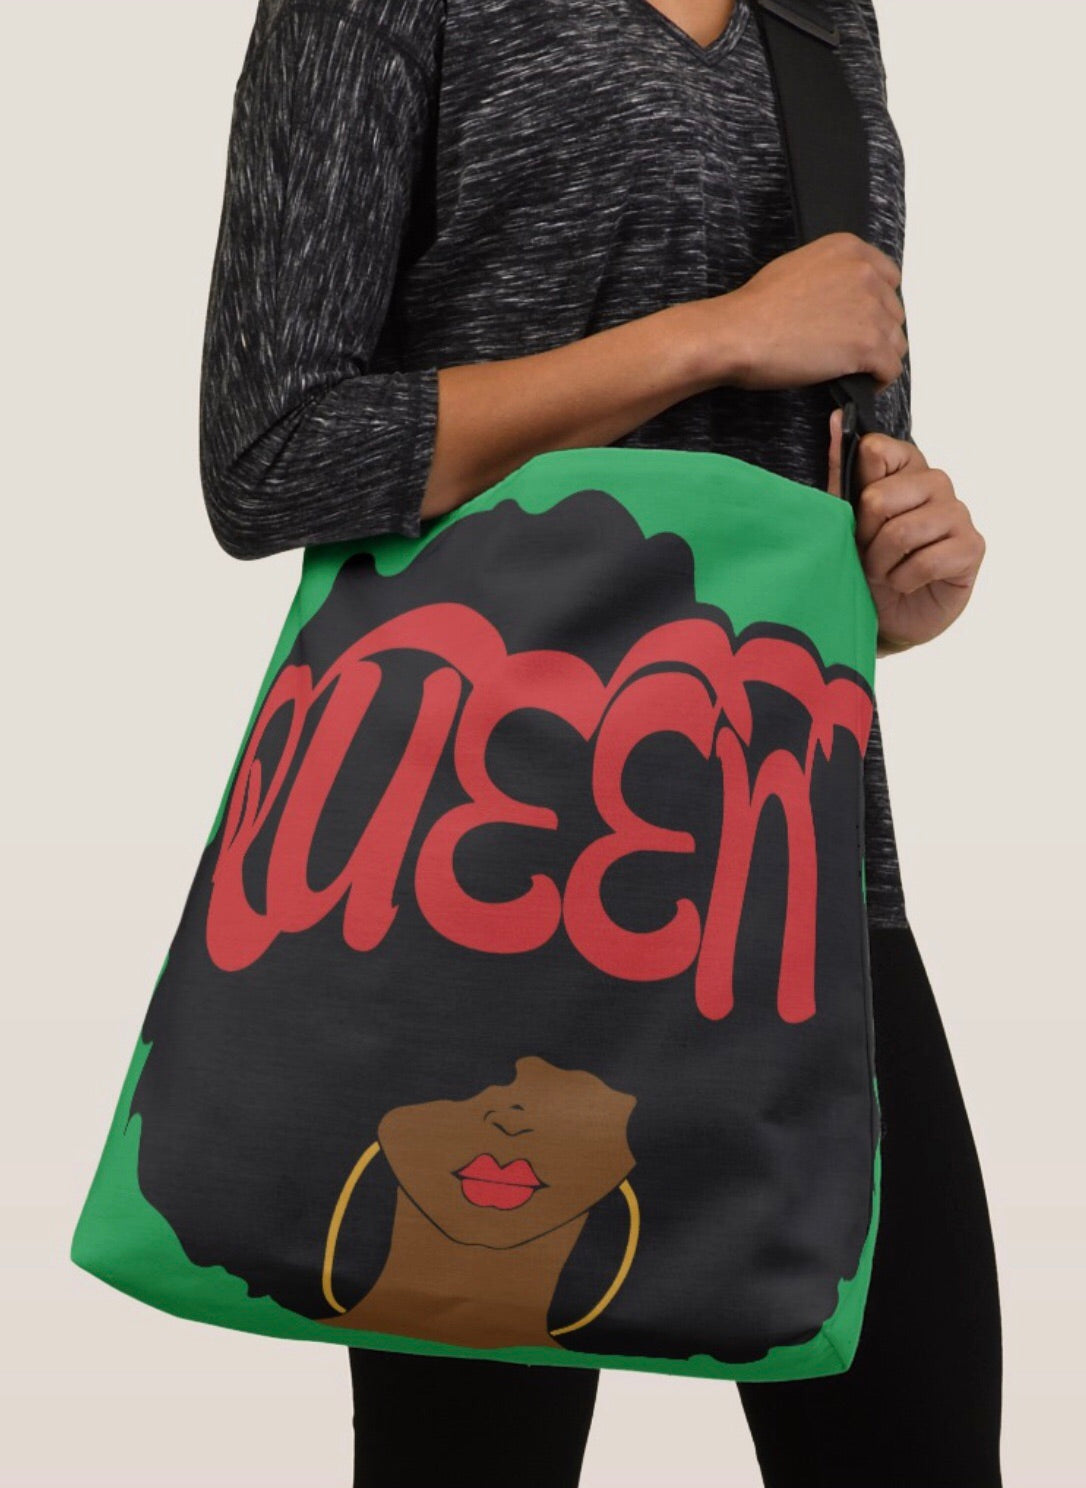 Queen Crossbody Tote Bag